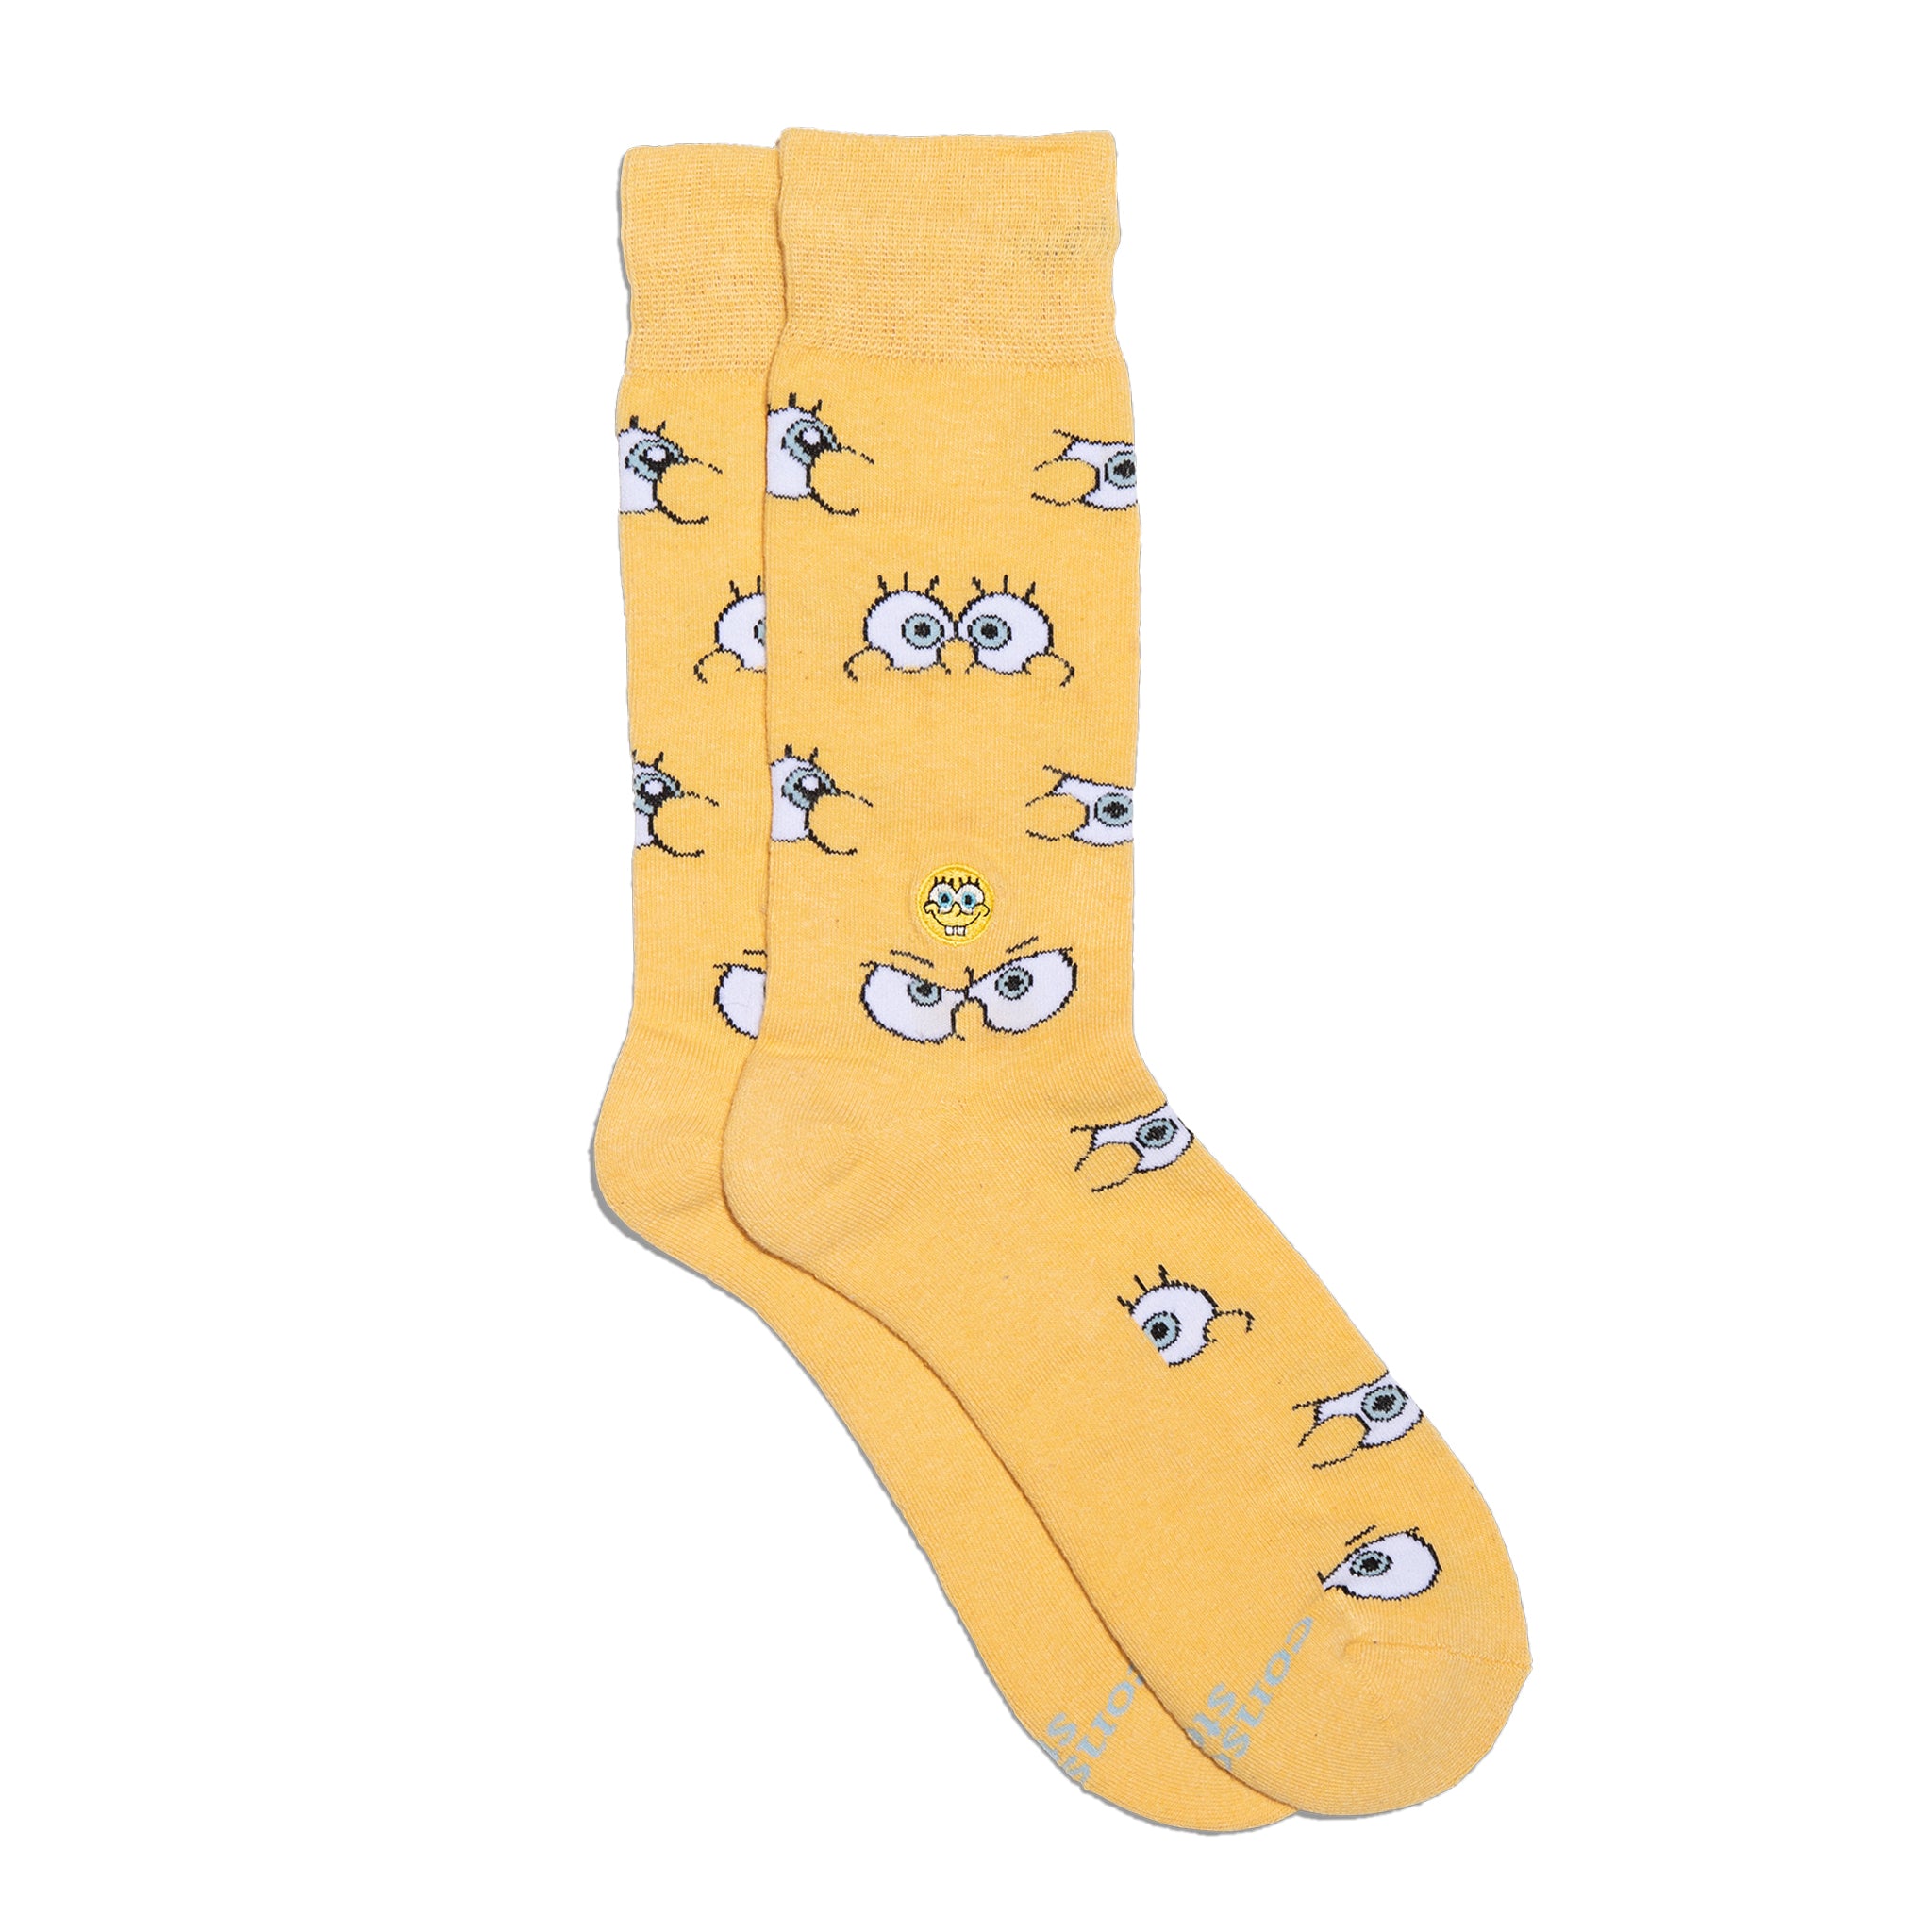 Spongebob Stockings Patrick, Stockings Stockings Socks